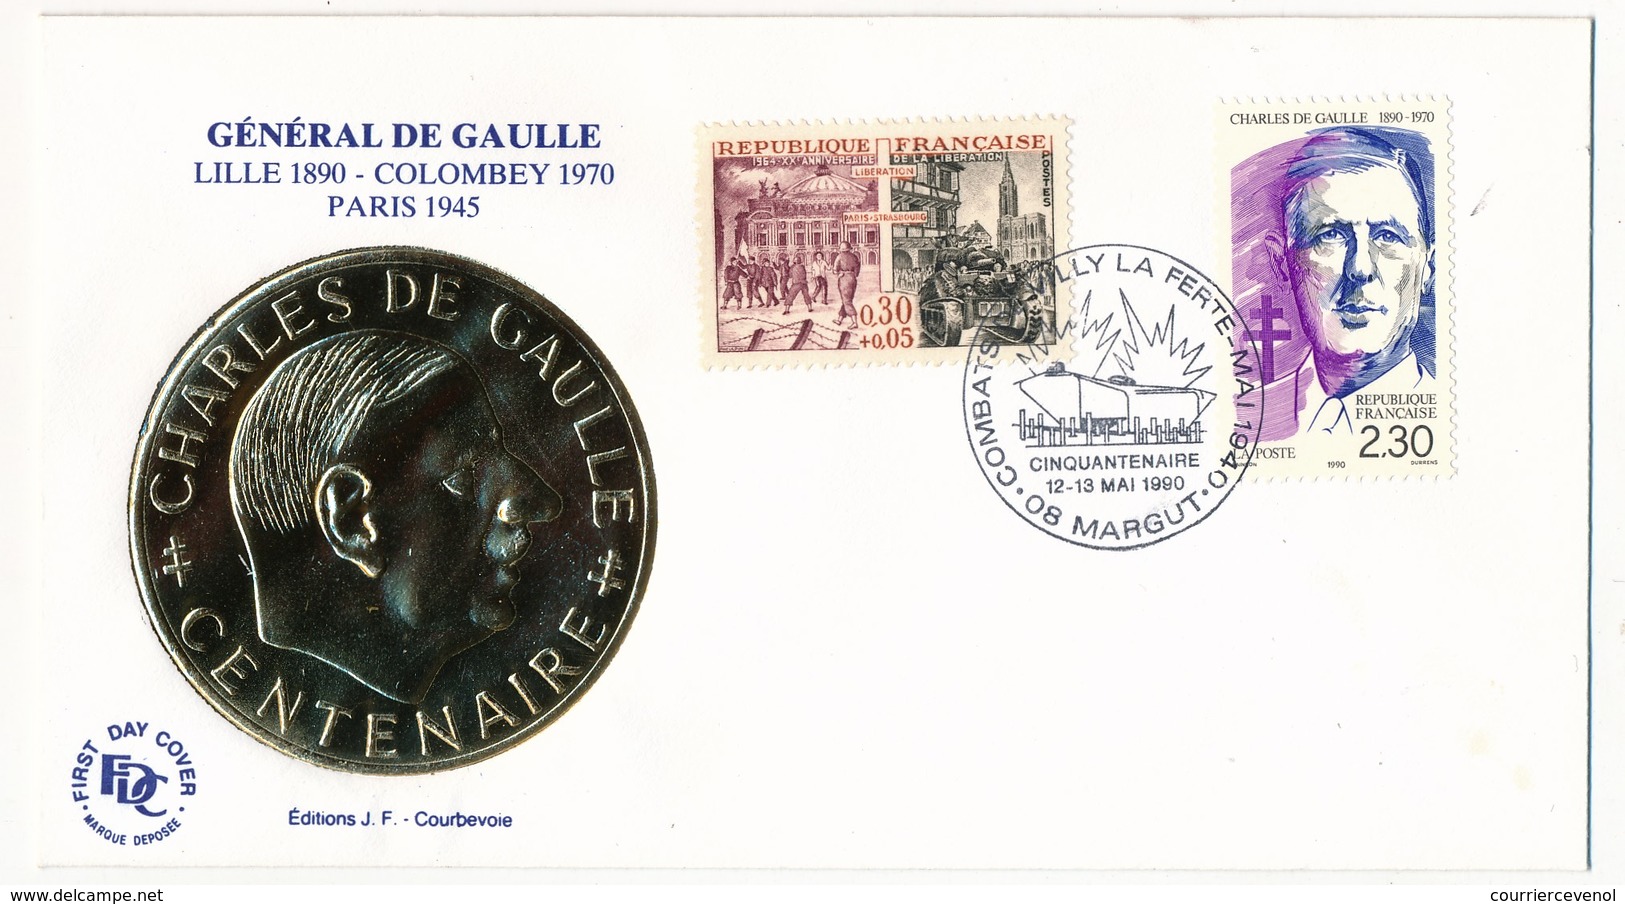 FRANCE - Enveloppe - Cachet Temporaire "Combats De Villy La Ferté - Cinquantenaire" - 08 MARGUT  - 12/13.6.1990 - De Gaulle (General)